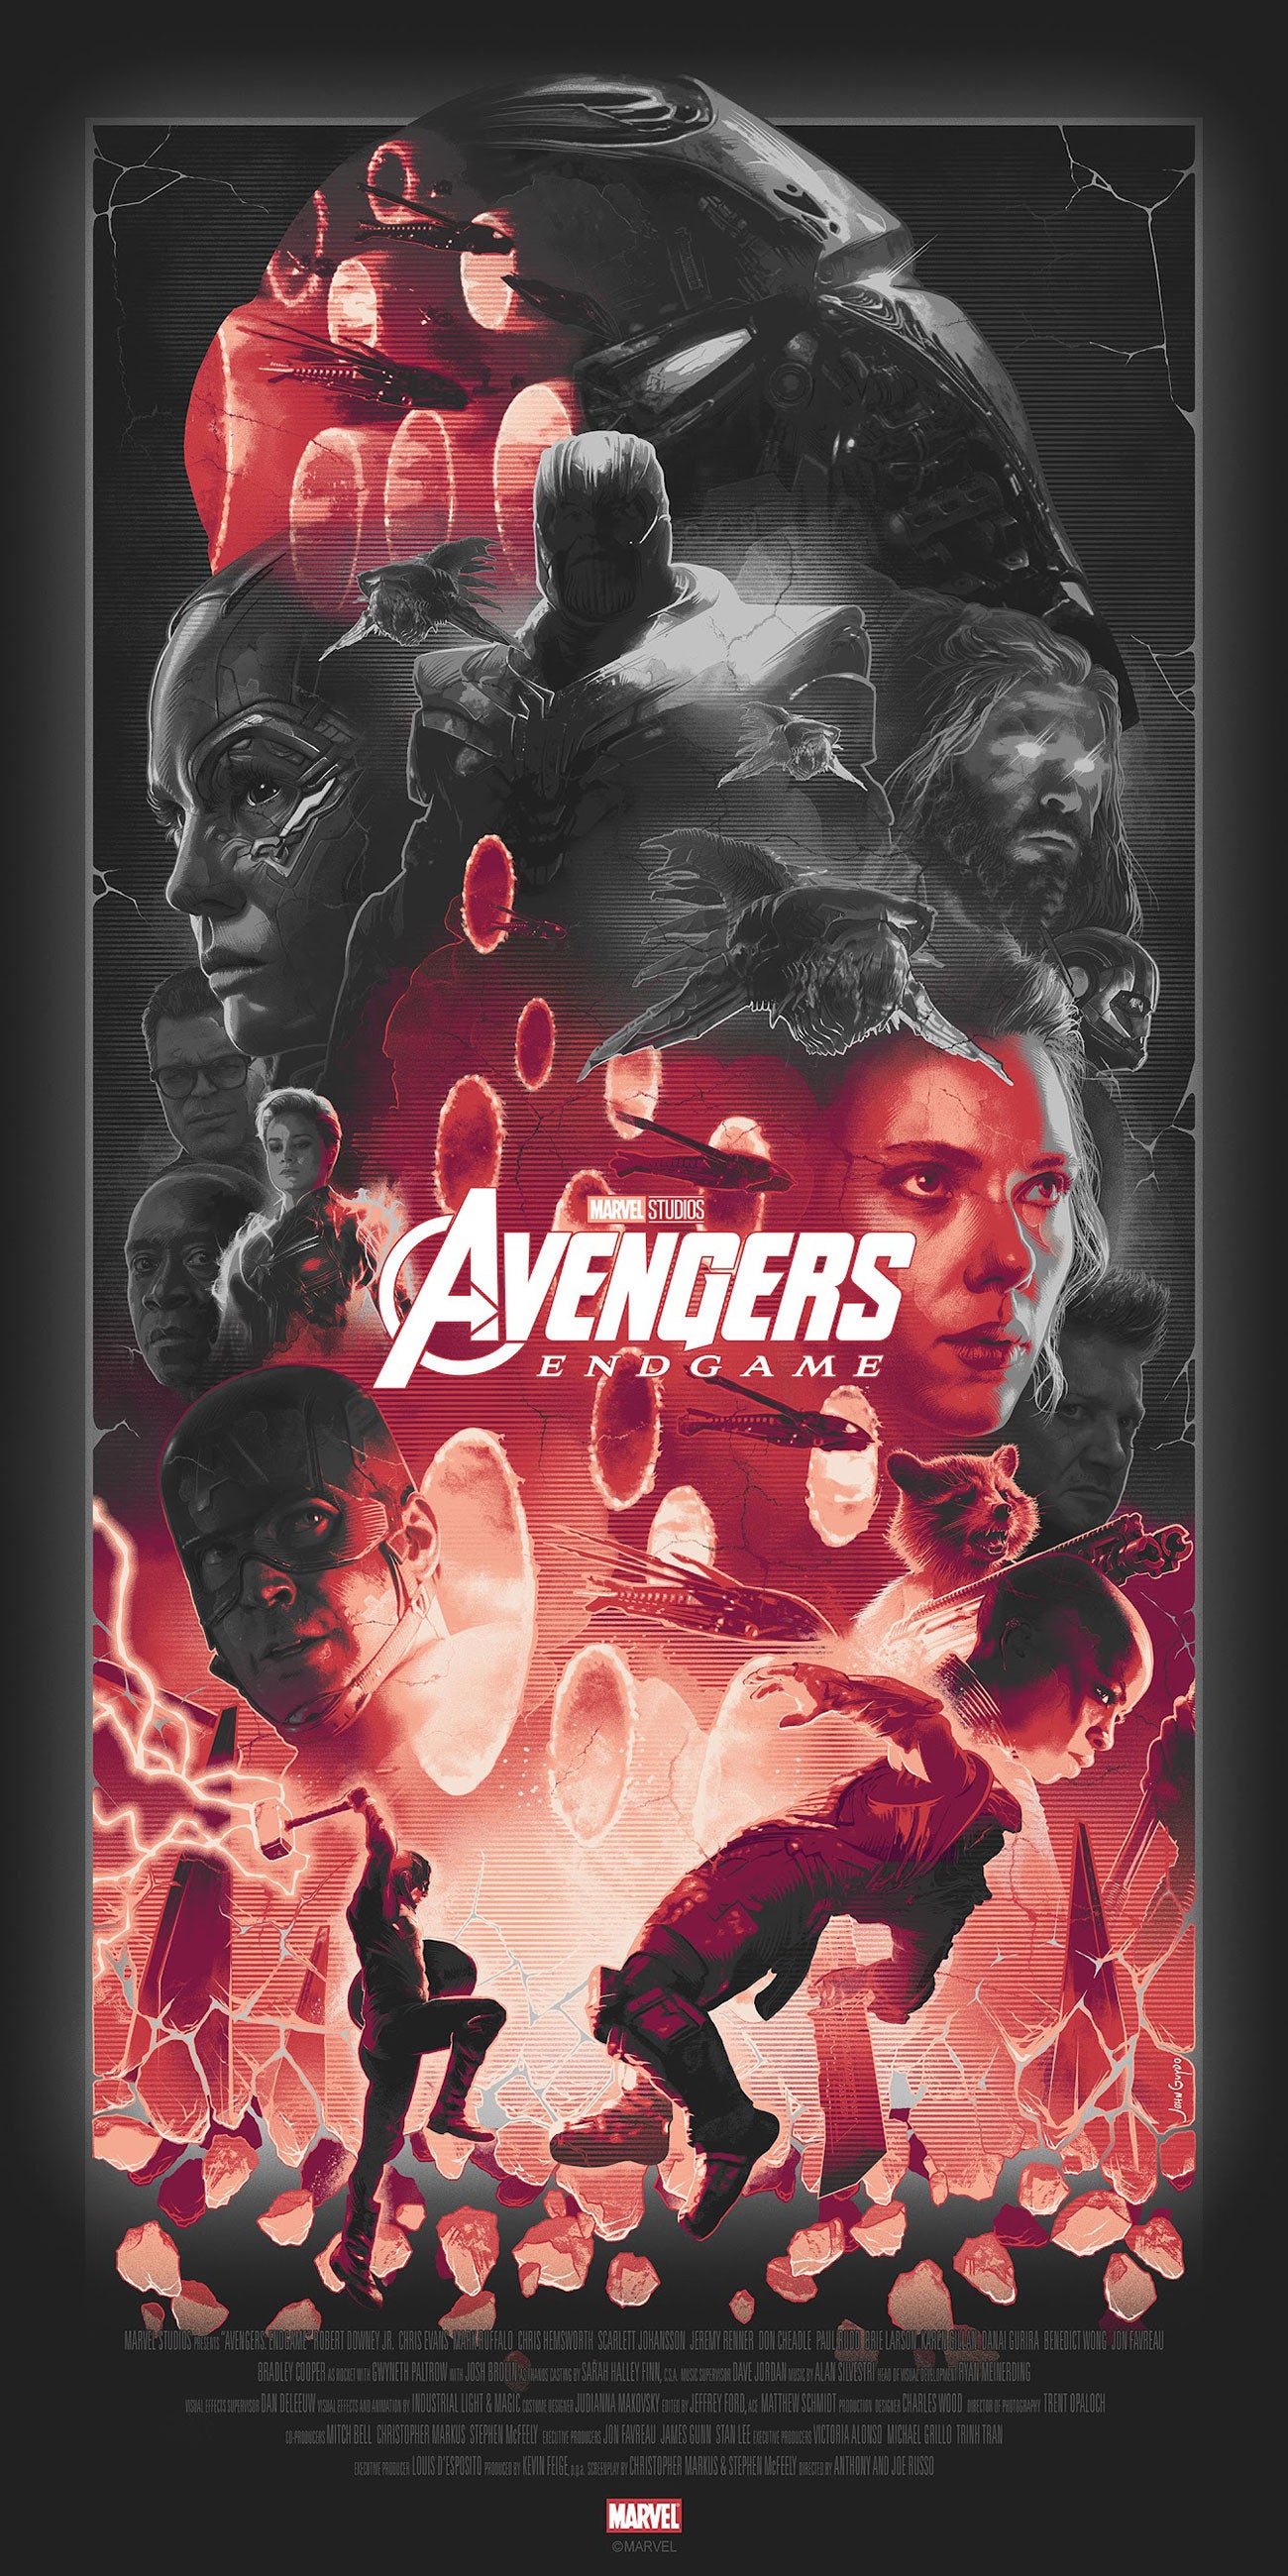 John Guydo "Avengers: Endgame" Noir Variant